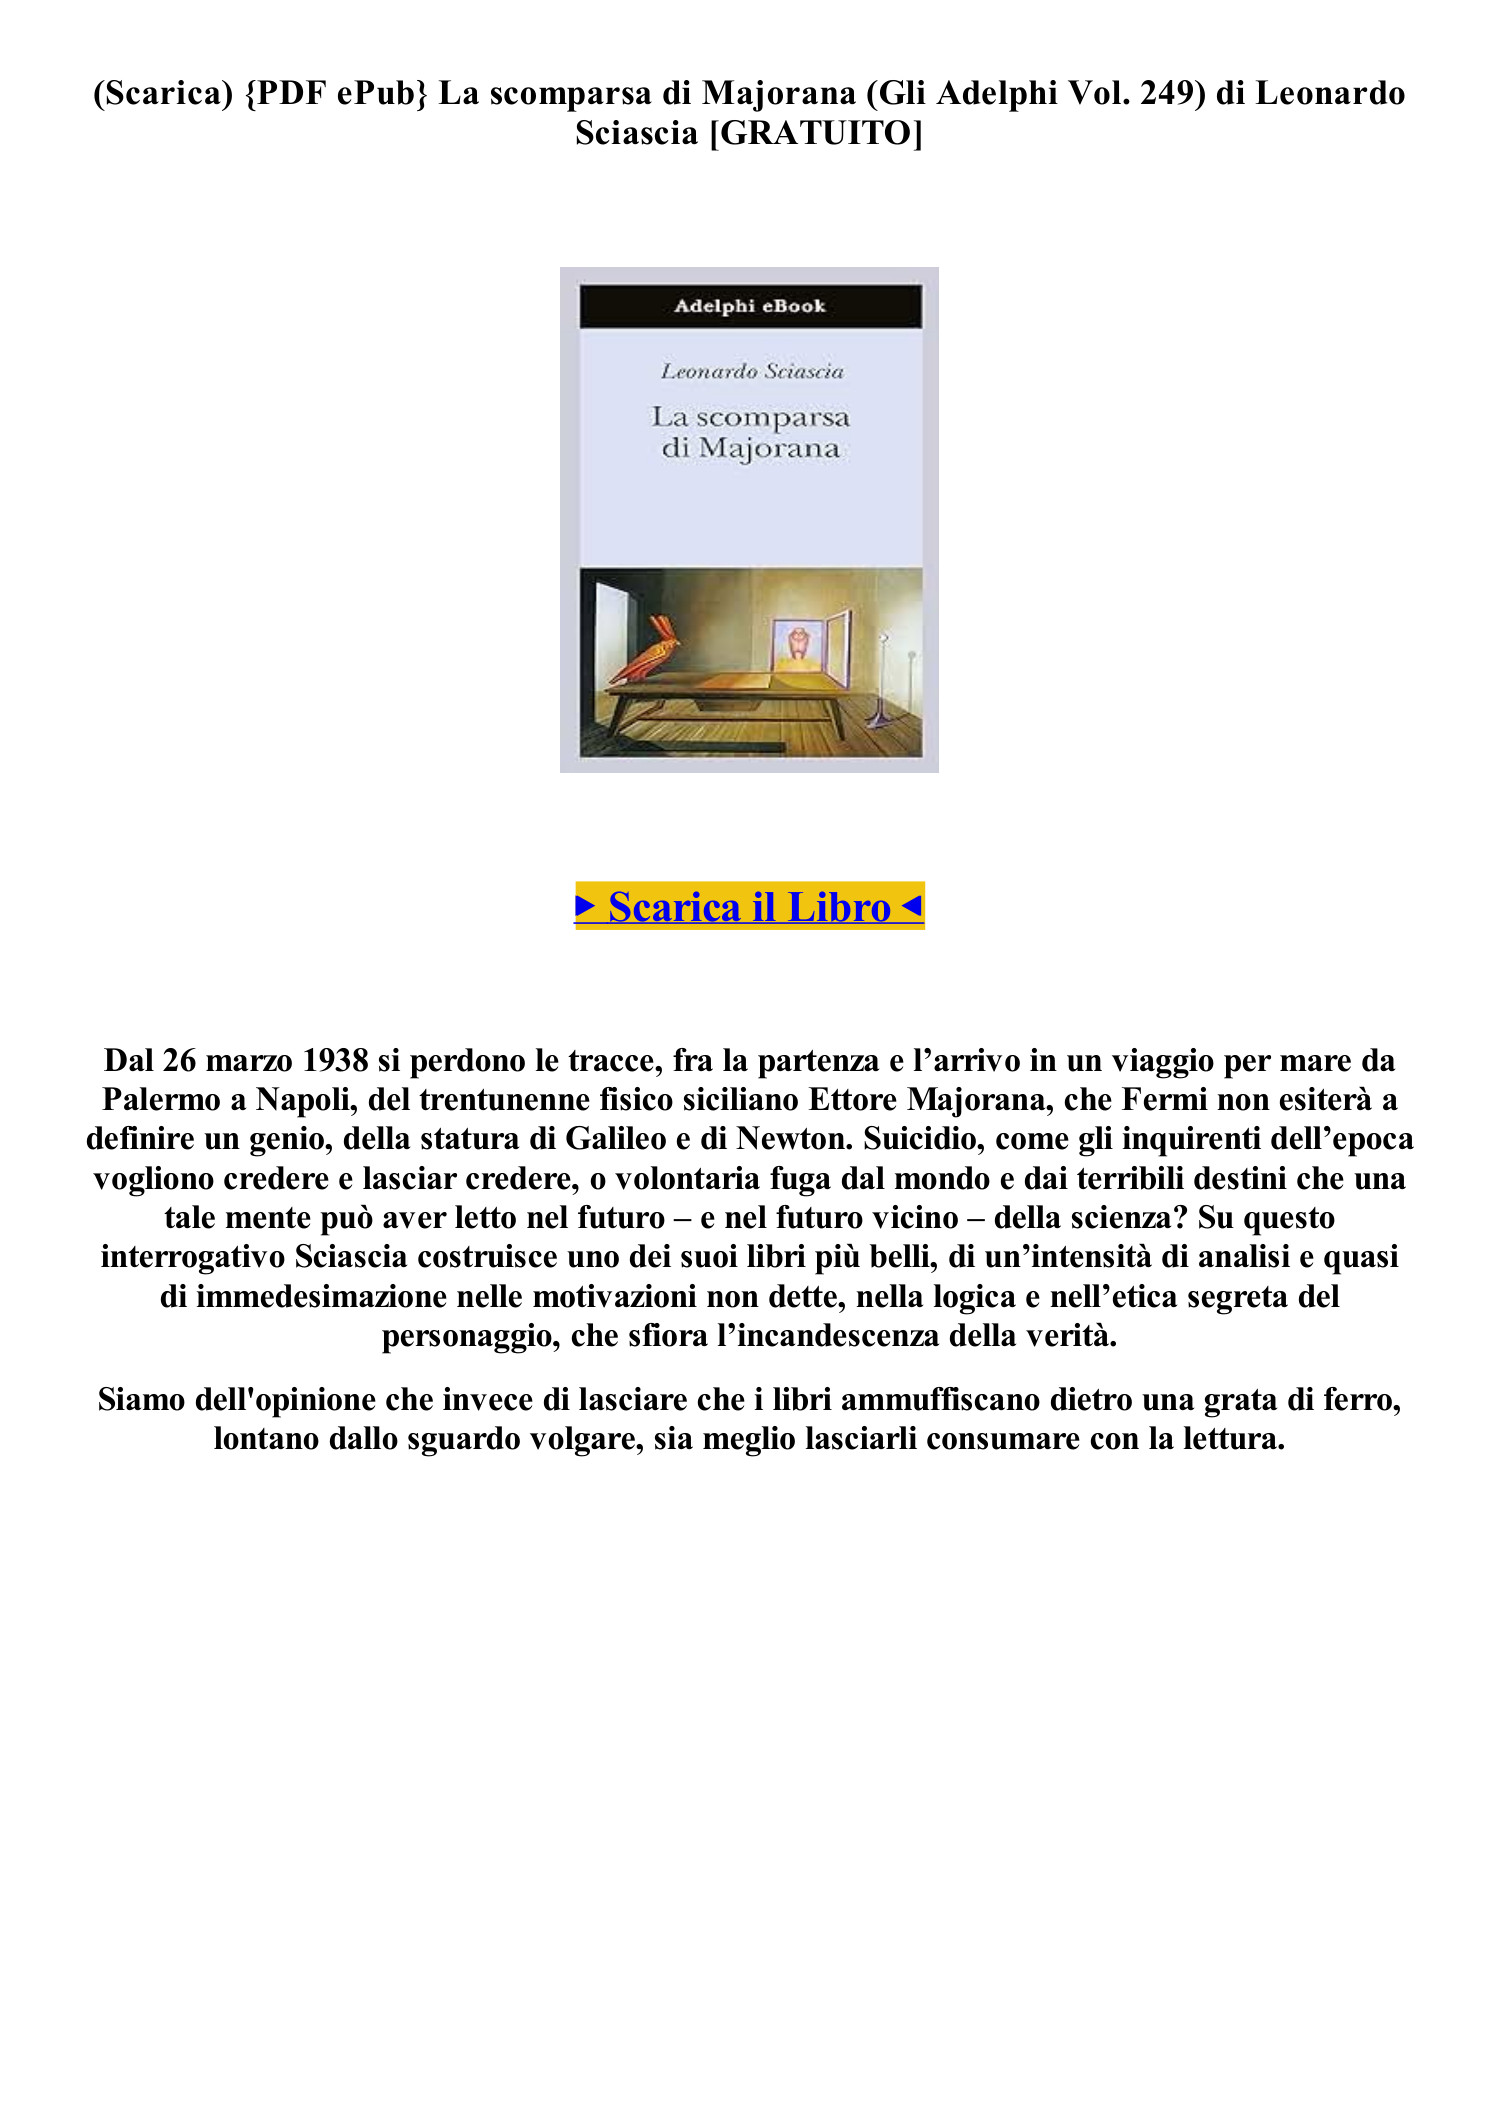 MOBI Leggere il Libro La scomparsa di Majorana (Gli Adelphi Vol. 249) di  Leonardo Sciascia epub (O7BQH).pdf